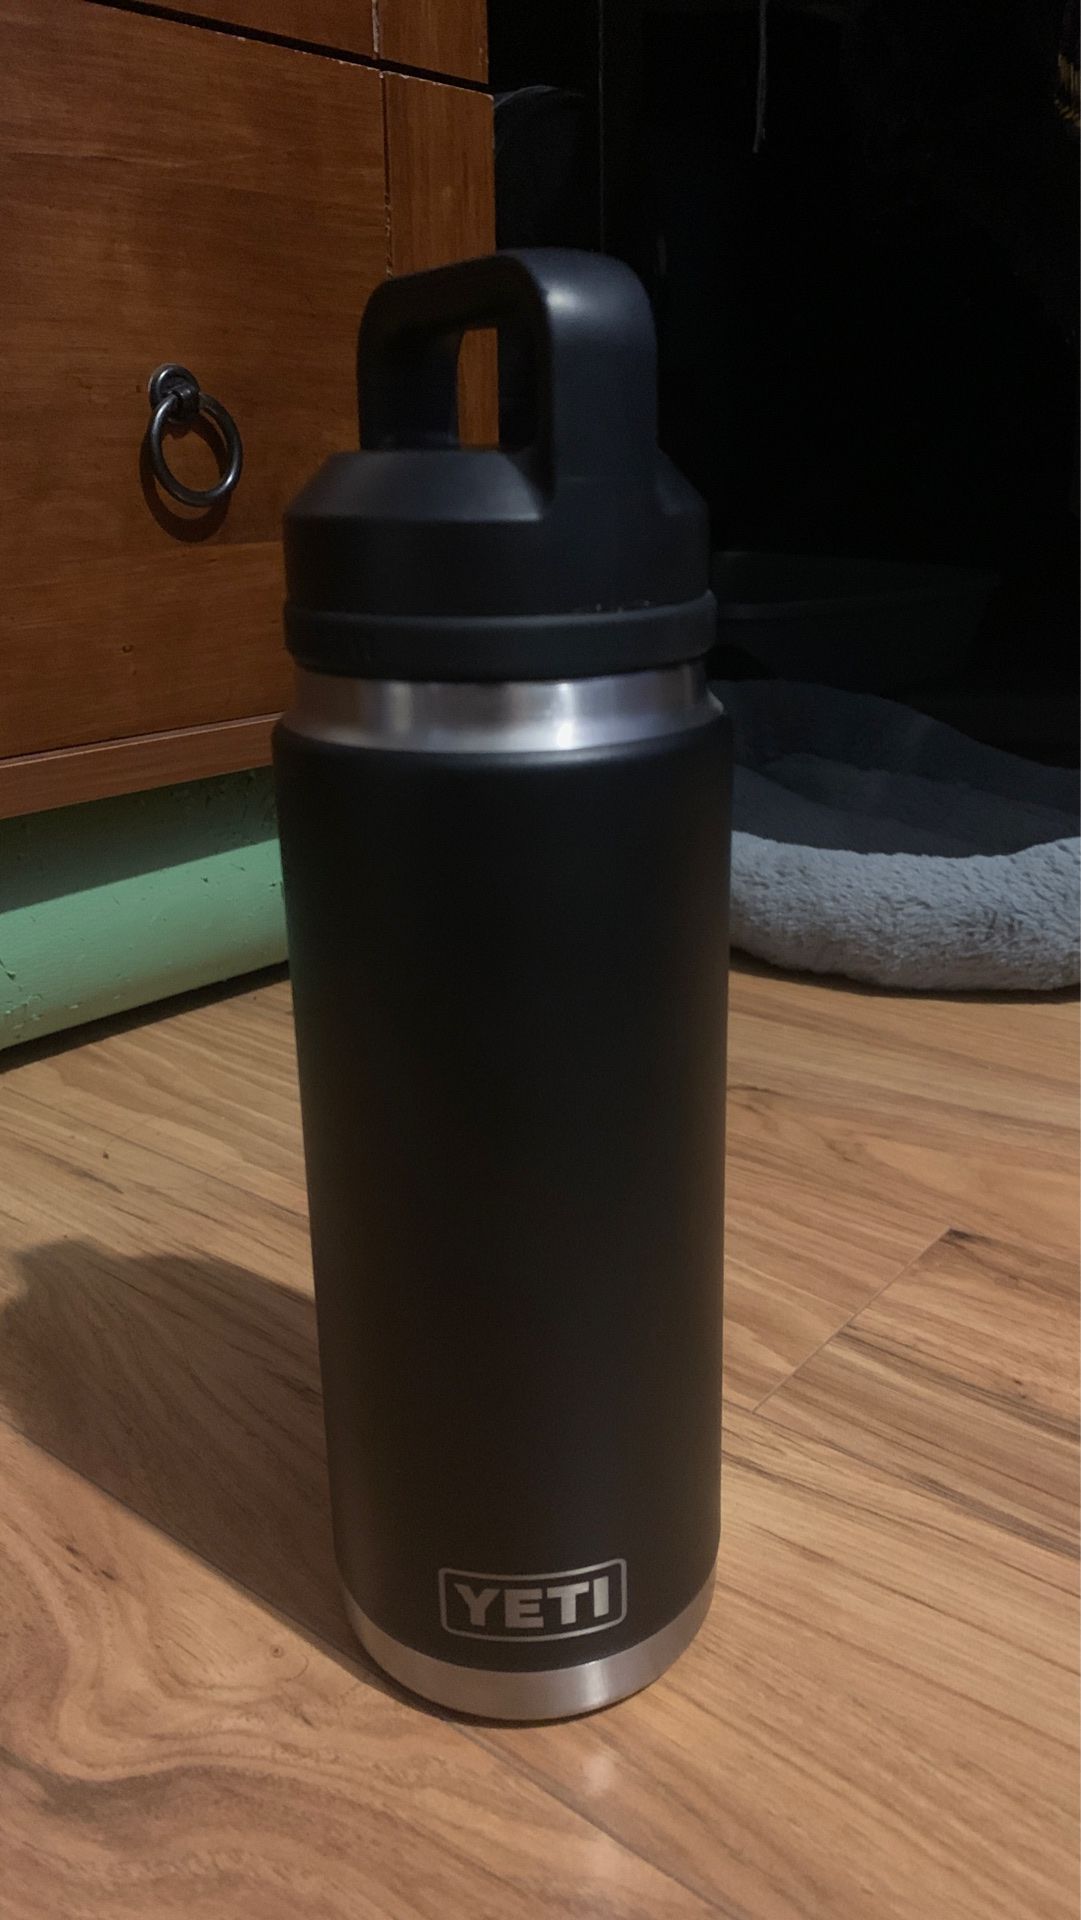 YETI Rambler, 26 fluid OZ water bottle